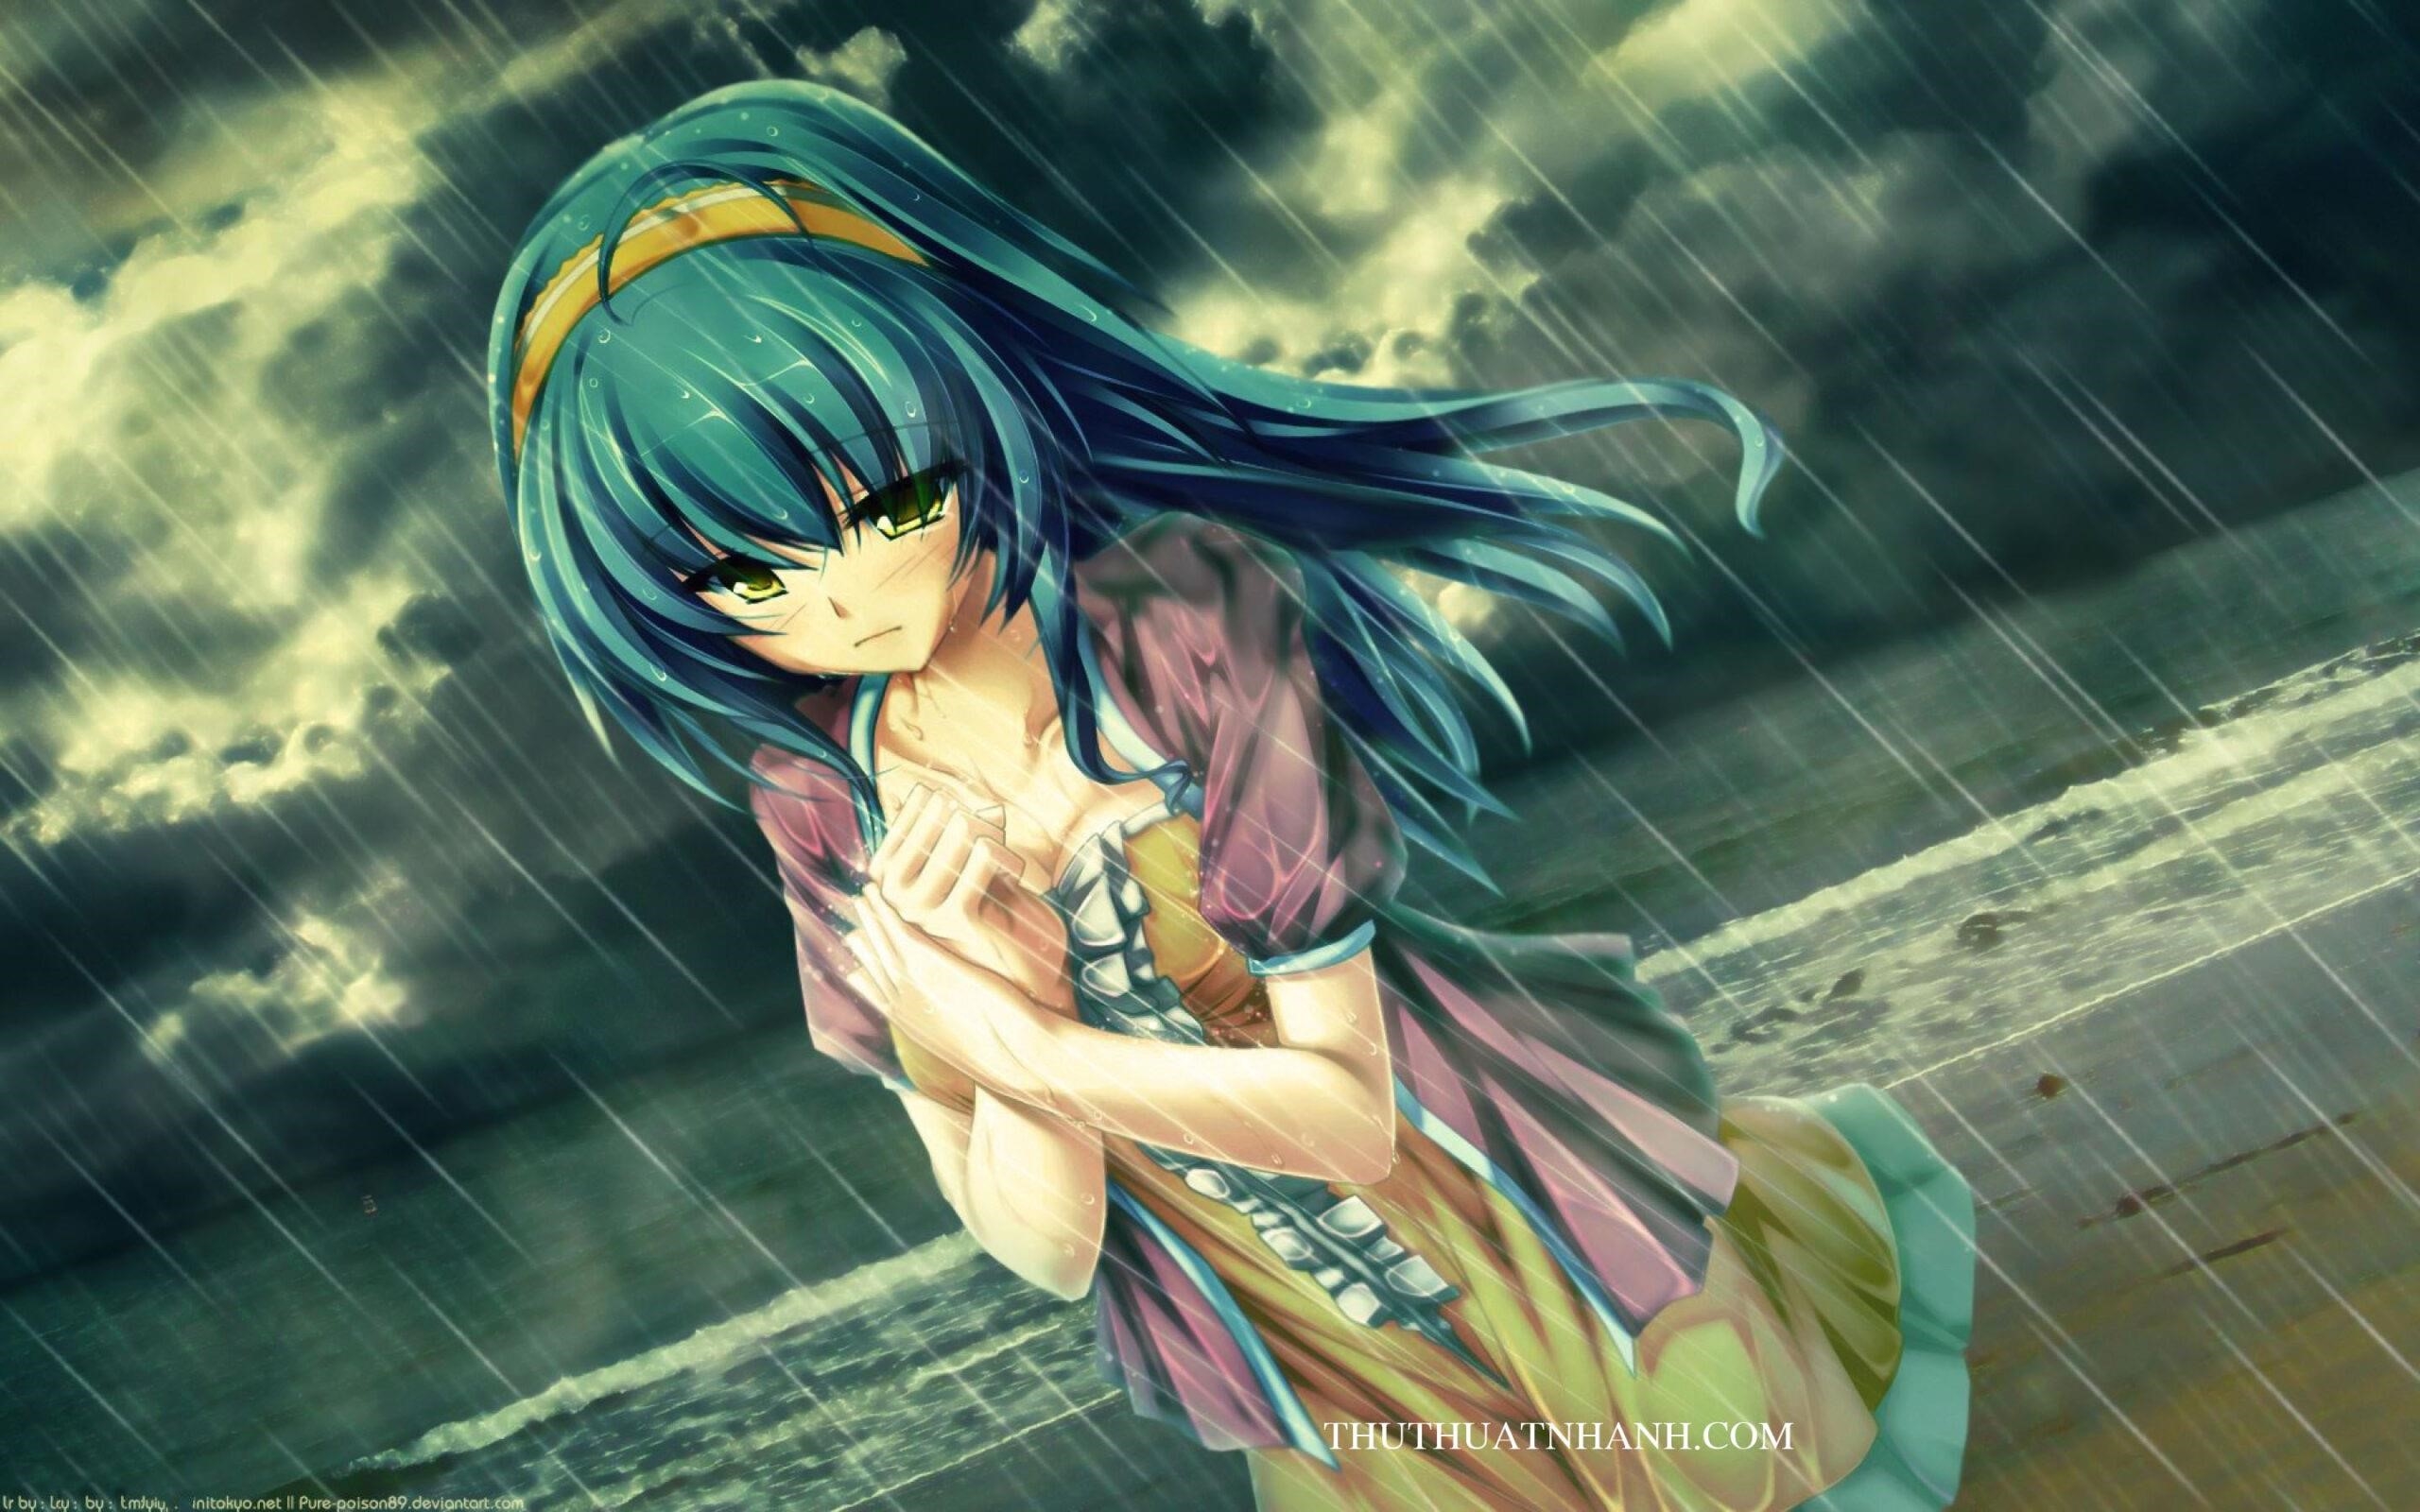 Ảnh anime buồn khóc dưới mưa thể hiện cảm xúc đau buồn, sầu lòng của nhân vật trong tình huống mưa rơi, tạo nên một bối cảnh đầy xúc cảm và lãng mạn.